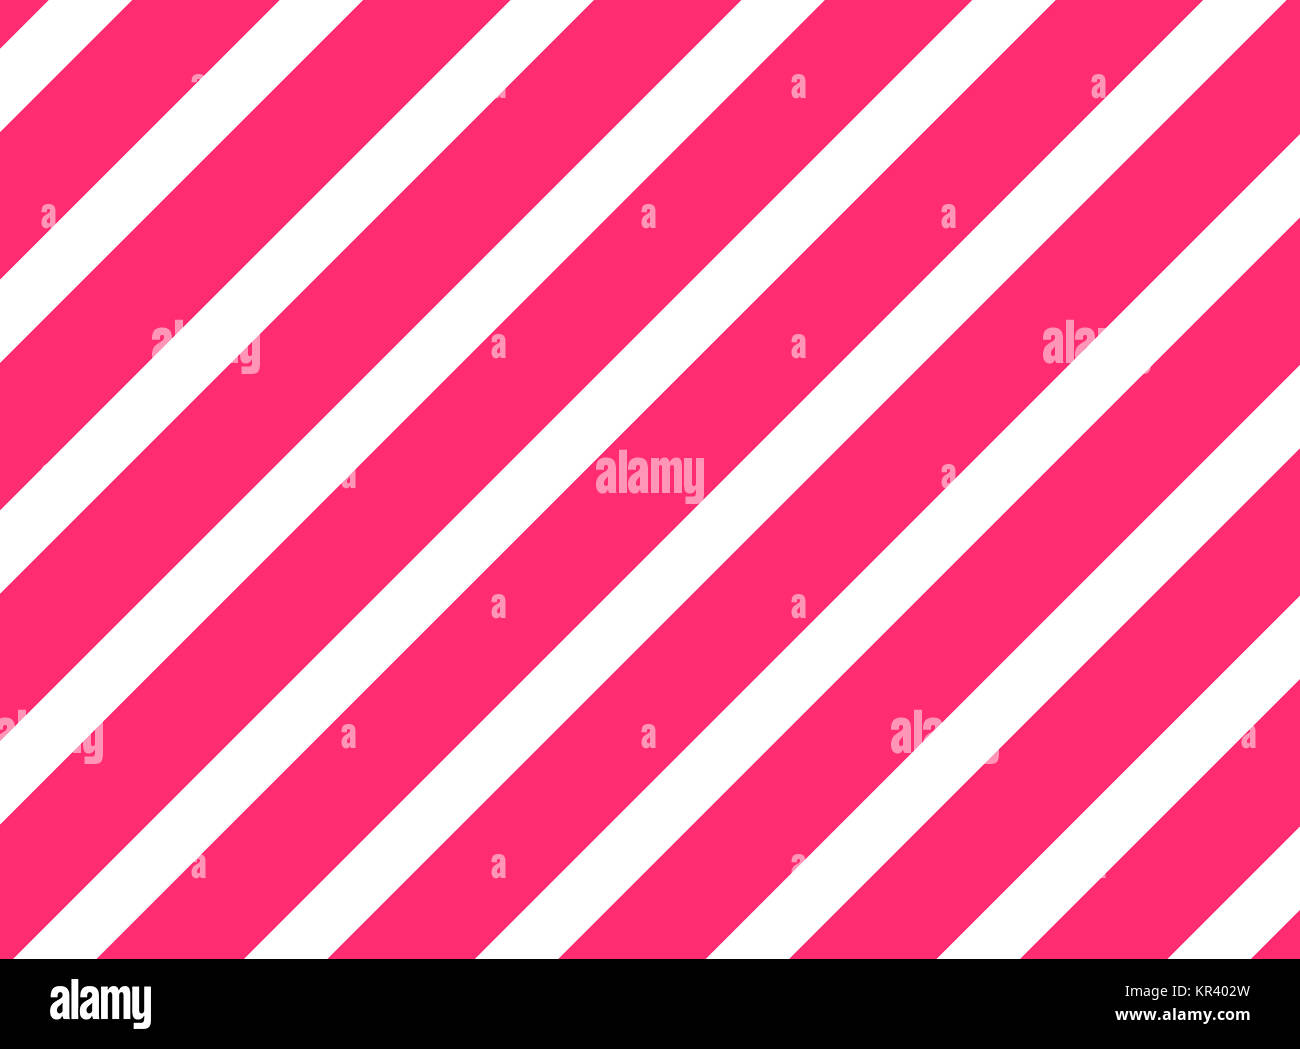 Hintergrund mit diagonalen Streifen in weiß und rosa Foto Stock